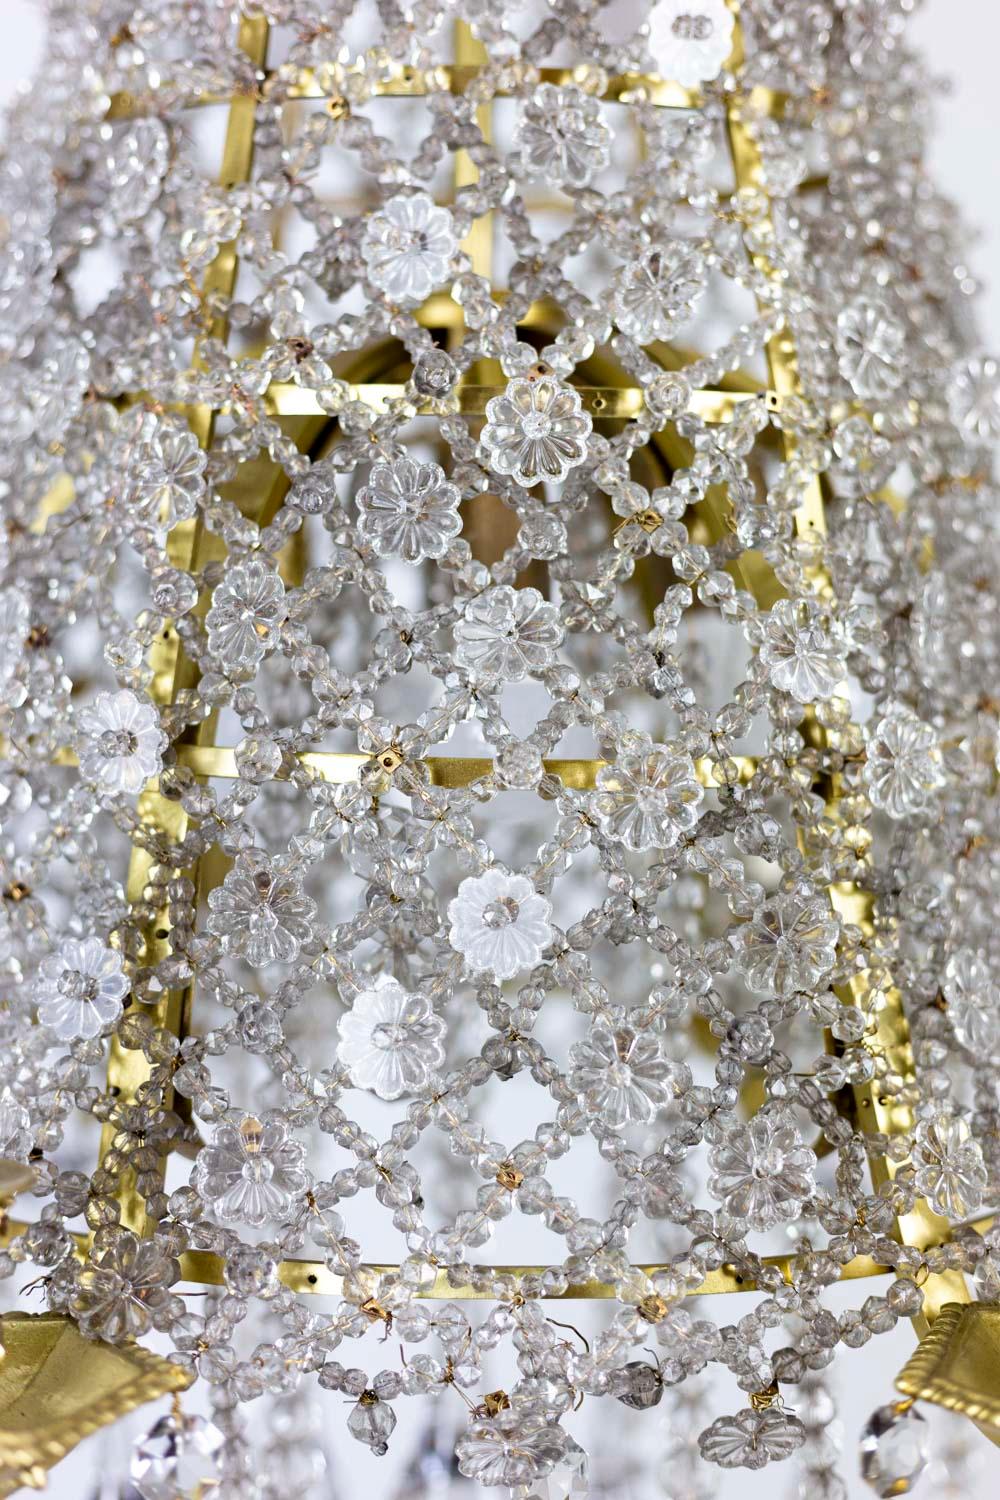 Lustre en forme de dentelle composé de perles de cristal ornées de fleurs en cristal. Lampes à six bras décorées de feuilles d'acanthe placées sur un rang attaché à l'axe central. Cache-belière (crochet de cuir) en forme de couronne fermée à fleur